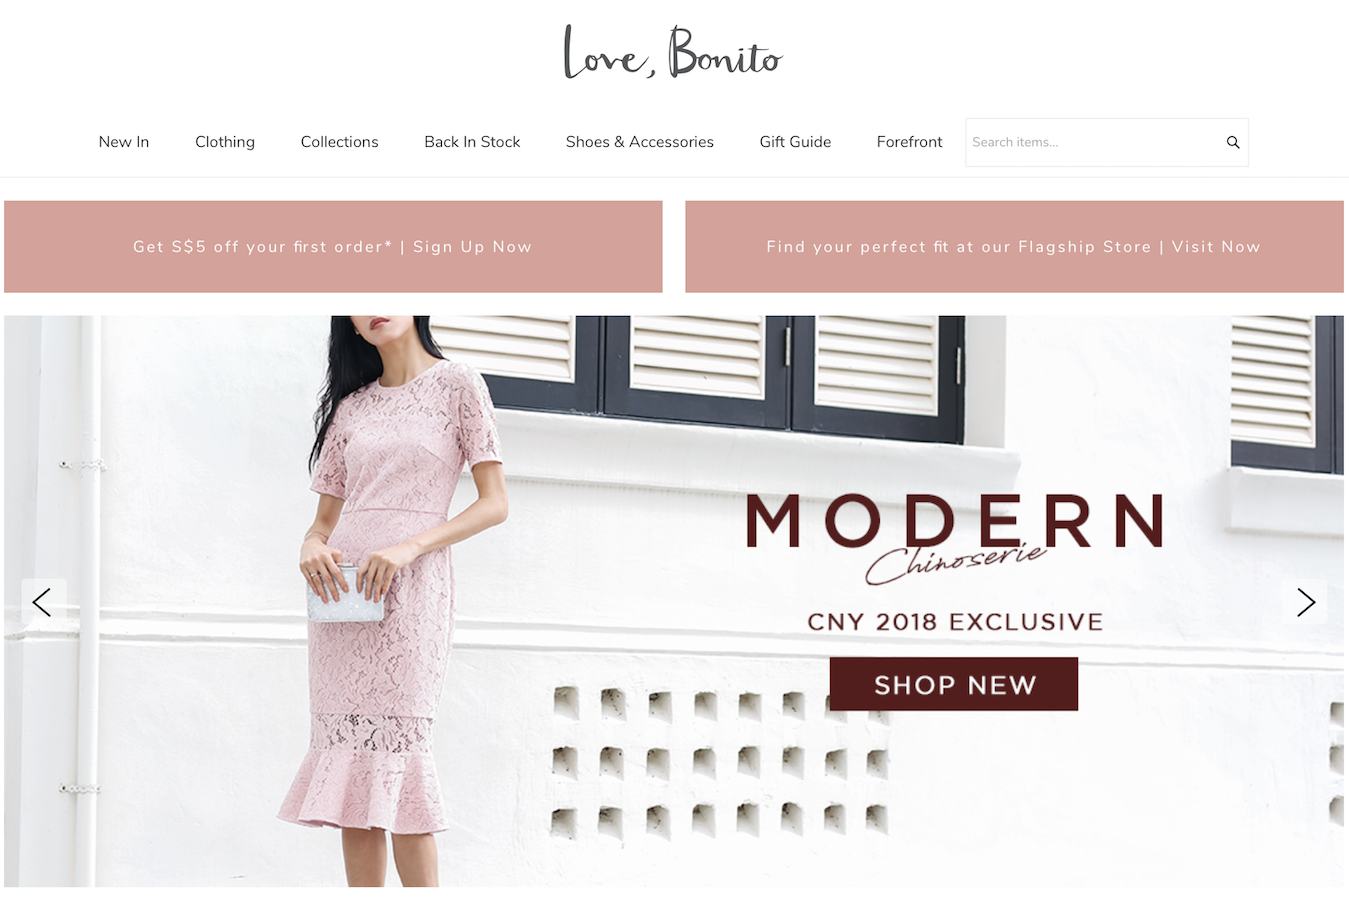 新加坡互联网女装品牌 Love, Bonito 完成1300万美元B轮融资，日本比价网站Kakaku.com母公司领投